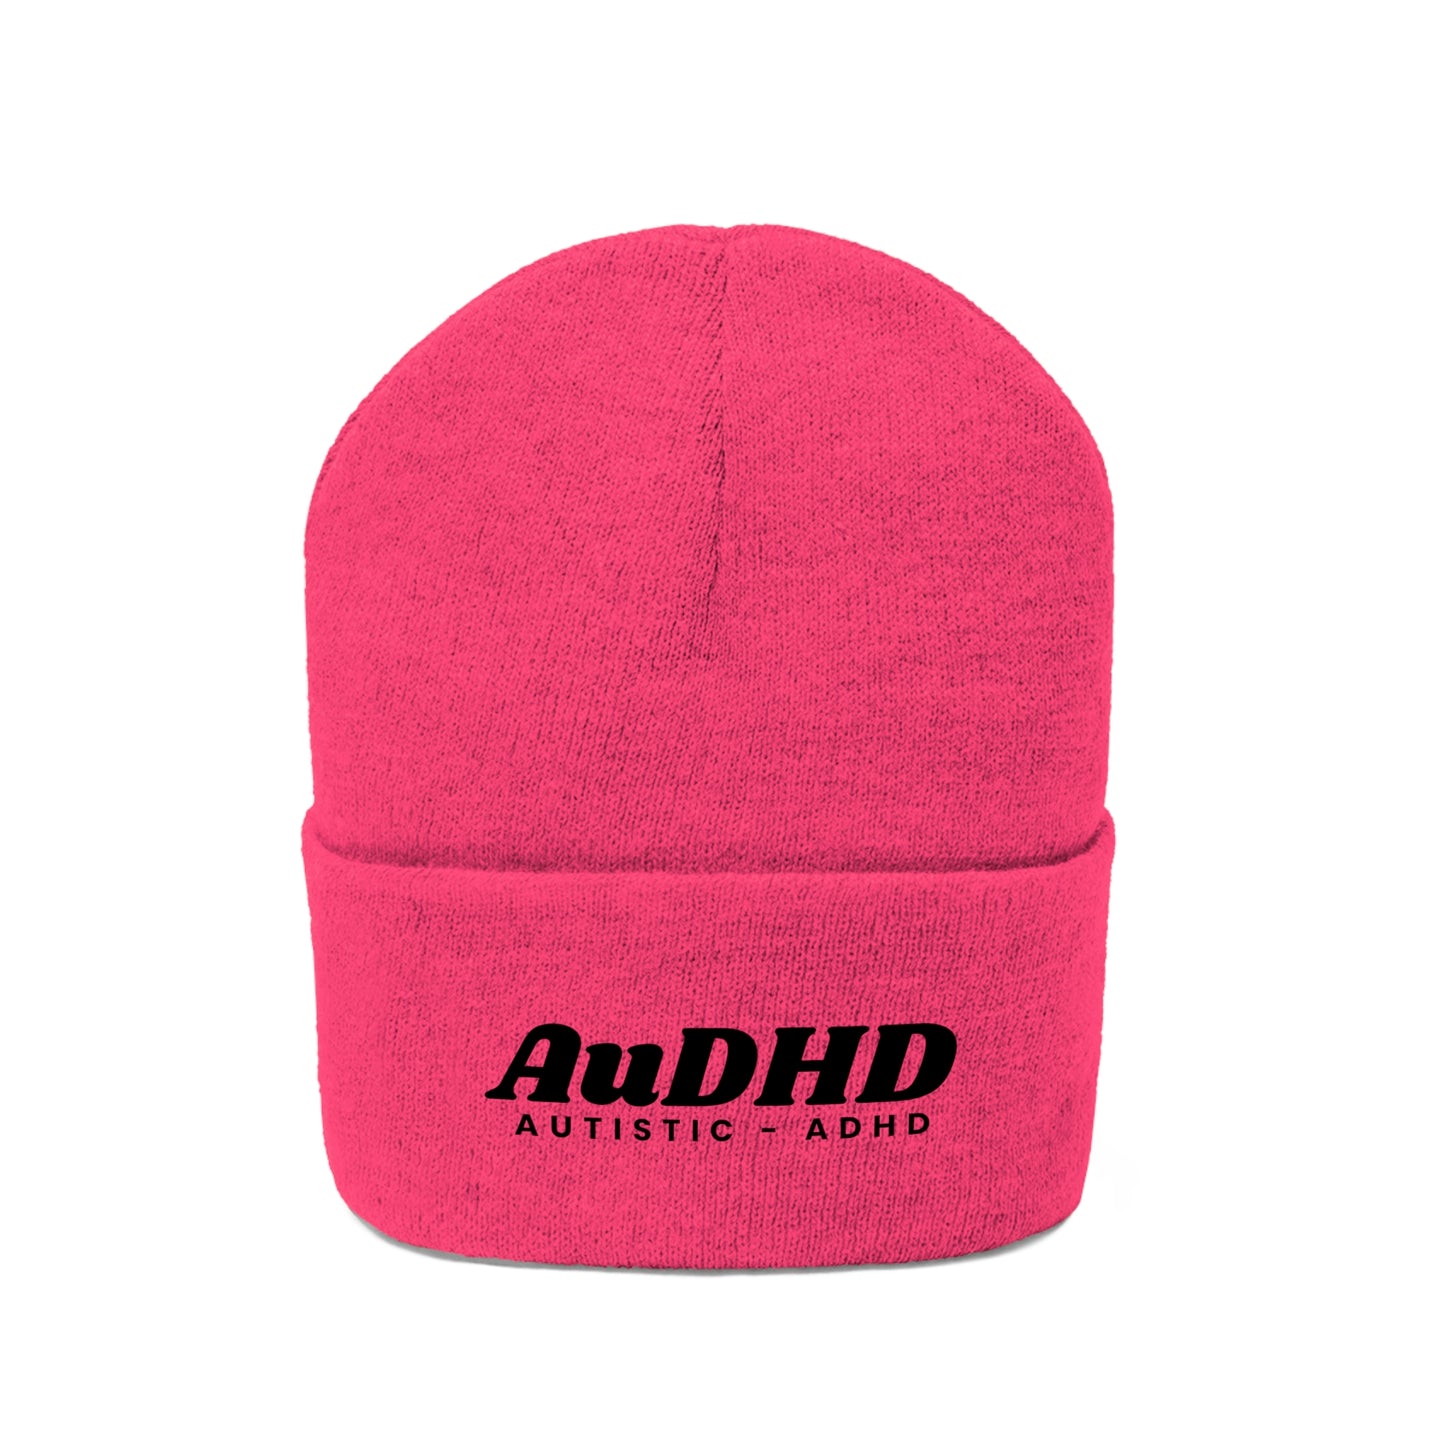 AuDHD Autistic-ADHD Knit Beanie